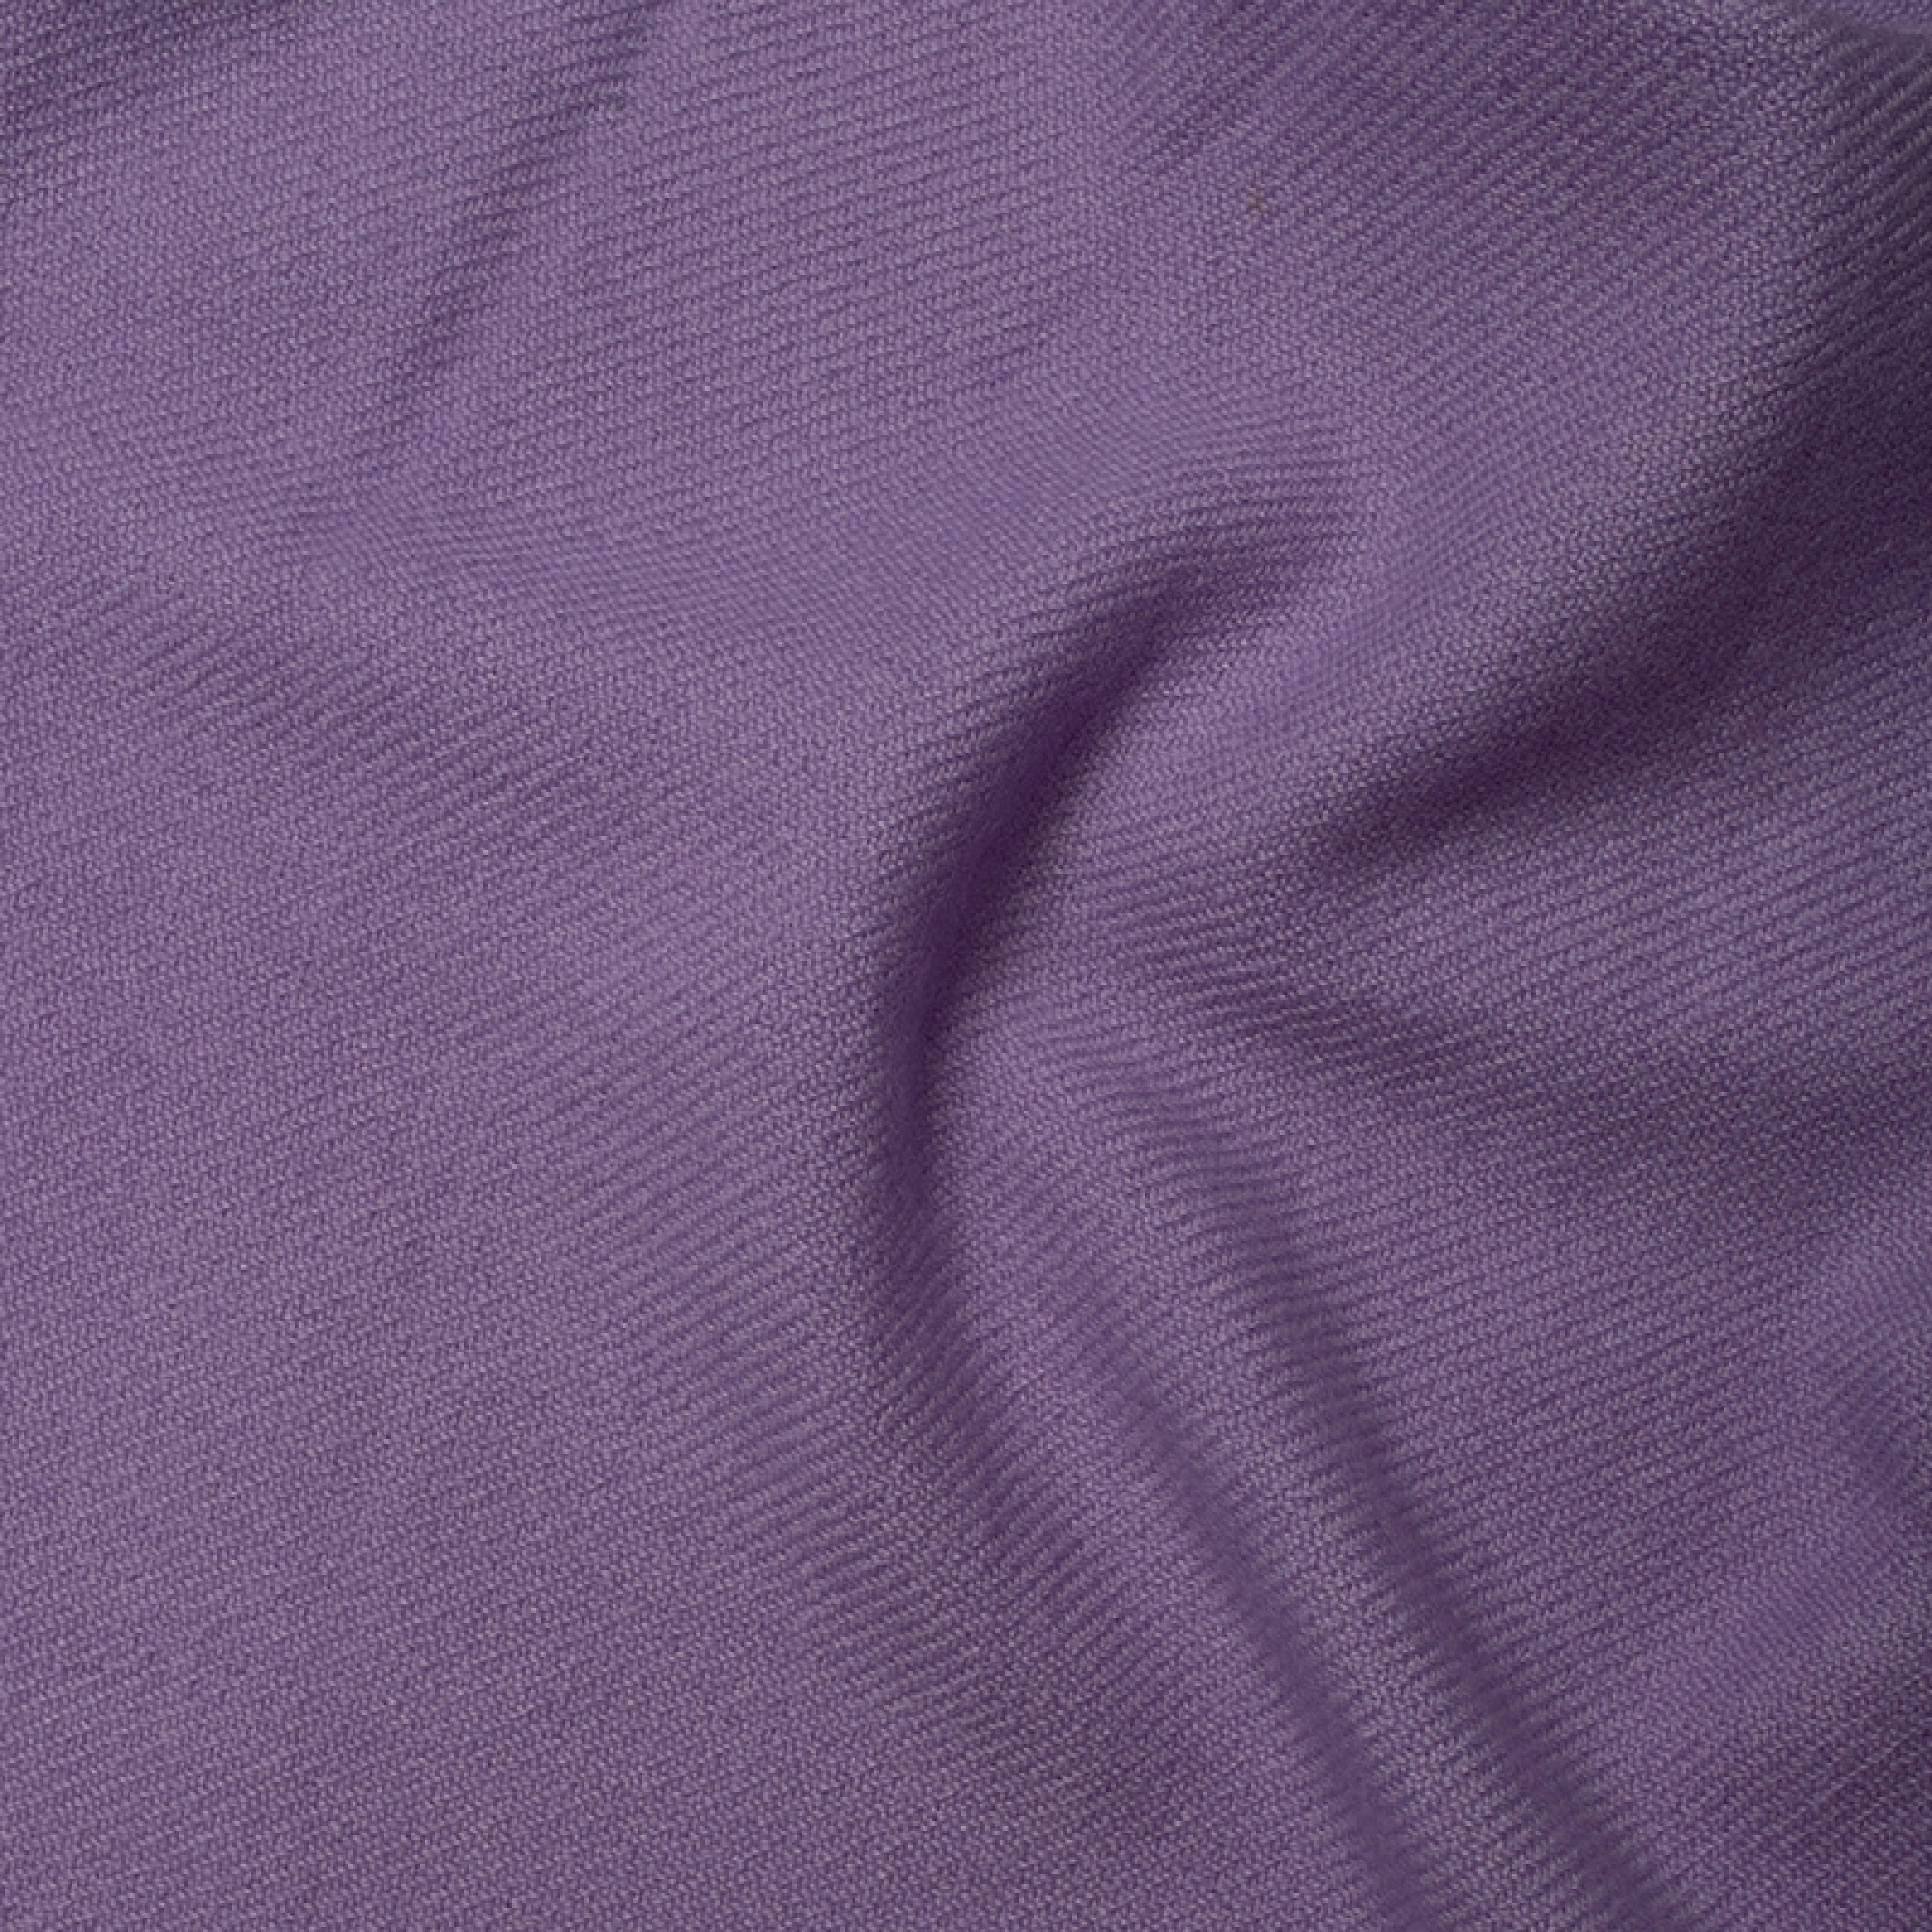 Cashmere accessoires neu toodoo plain m 180 x 220 bluhender lavendel 180 x 220 cm